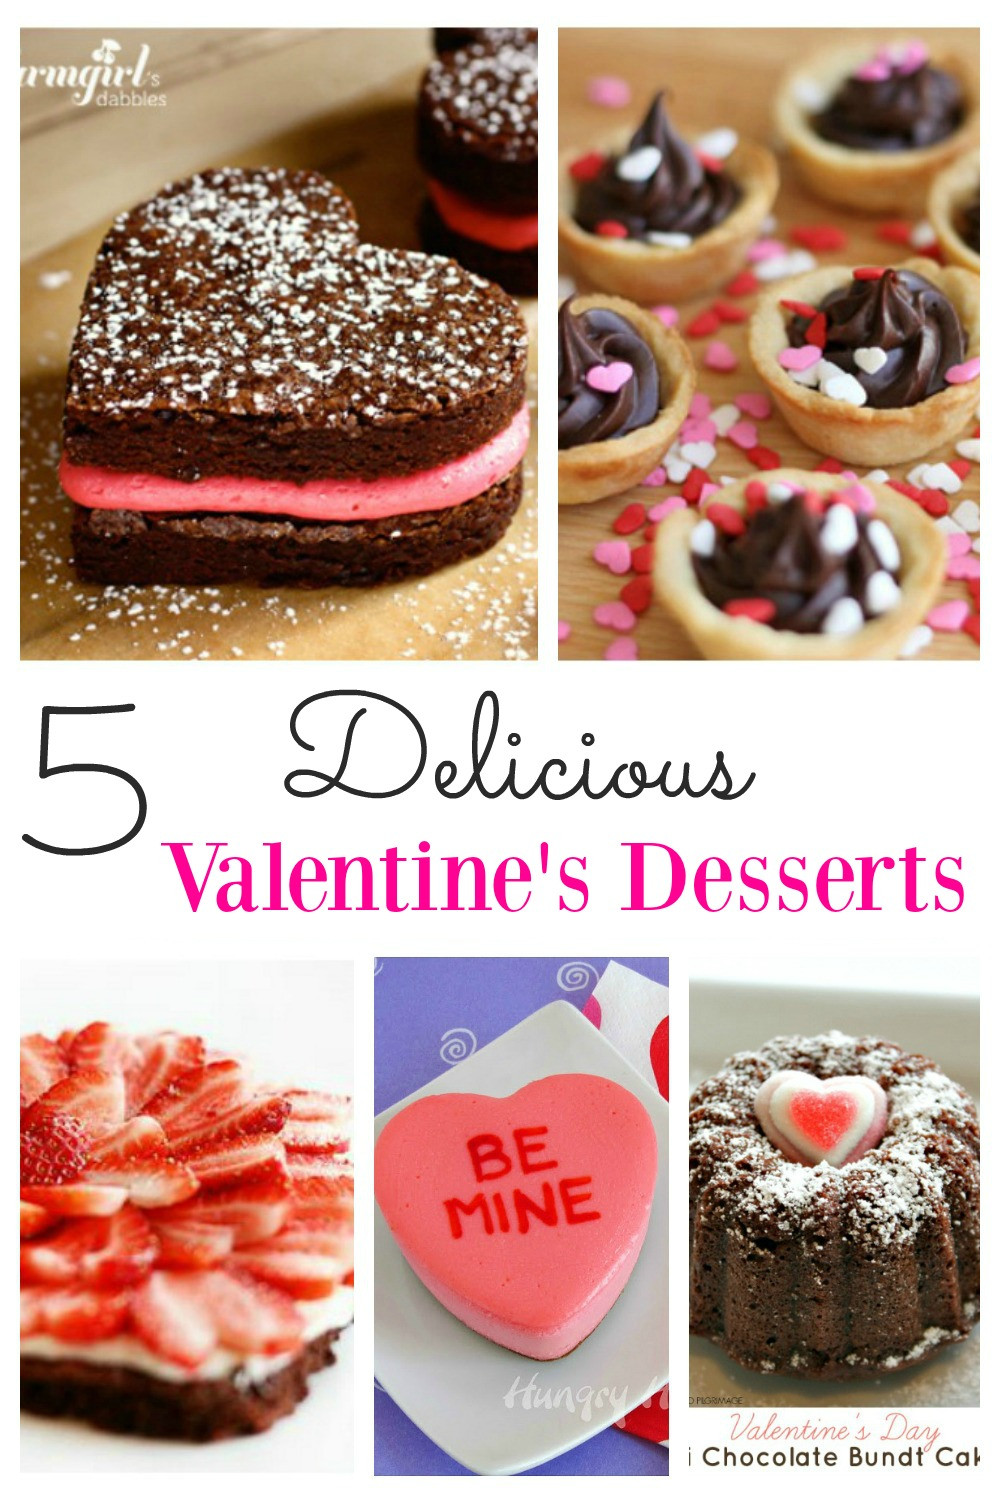 Valentine Day Recipes Desserts
 Delicious Valentines Desserts